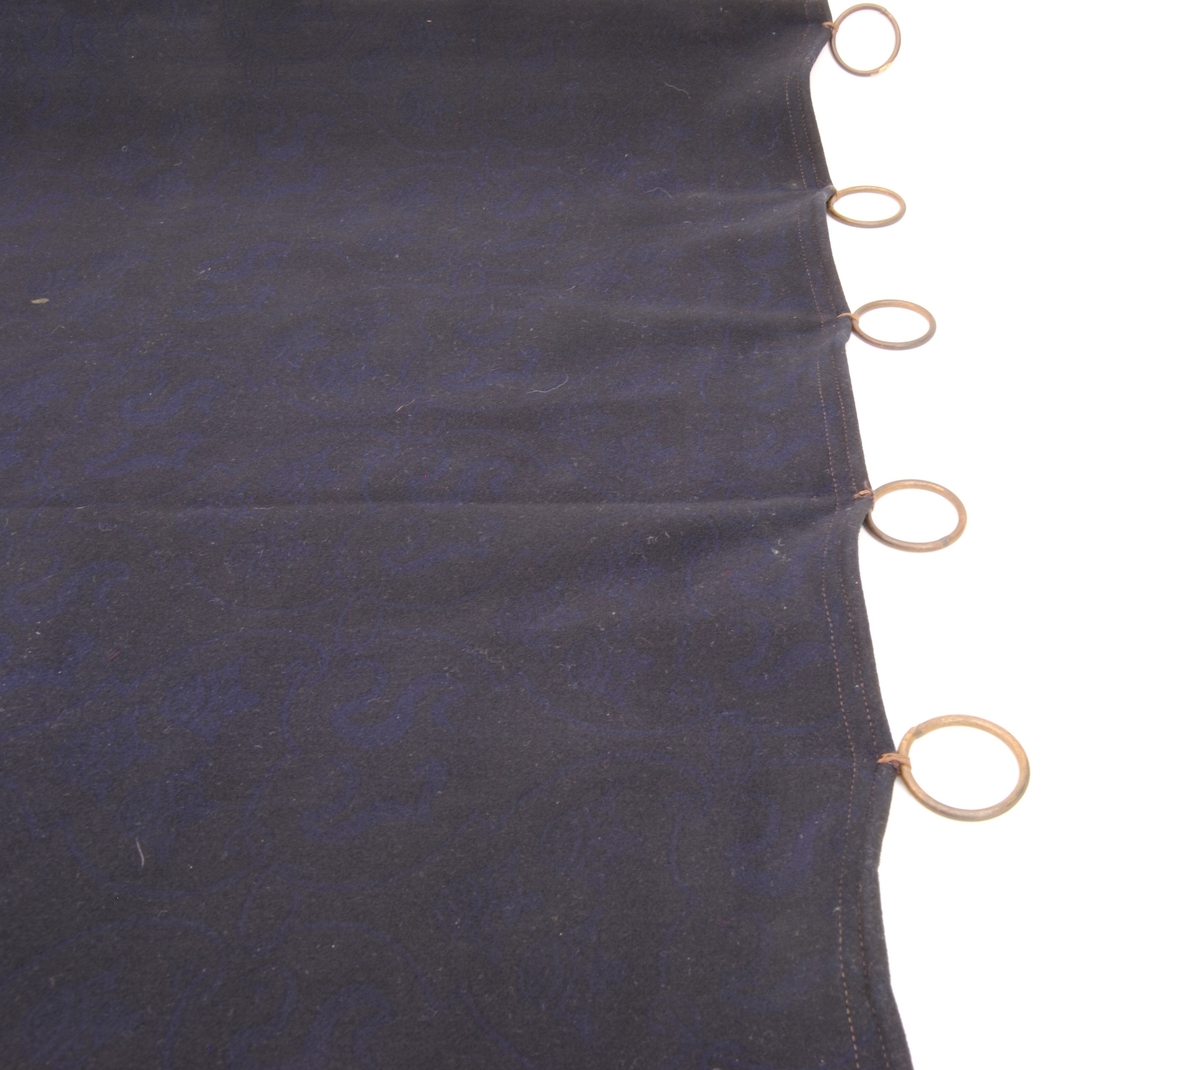 En gardin av fint kläde, med blått mönster på svart botten. Mönstret består av slingrande linjer som bildar fält som fylls växelvis av SJ:s initialer eller tre kronor.
På tygets avigsida är färgerna omvända.

Gardinen har en fåll med dubbelsöm upptill, nedtill och på sidorna är fållen sydd med enkelsöm. Alla kanter är invikta en gång. Gardinen har mässingsringar fastsydda i den övre fållen för upphängning.